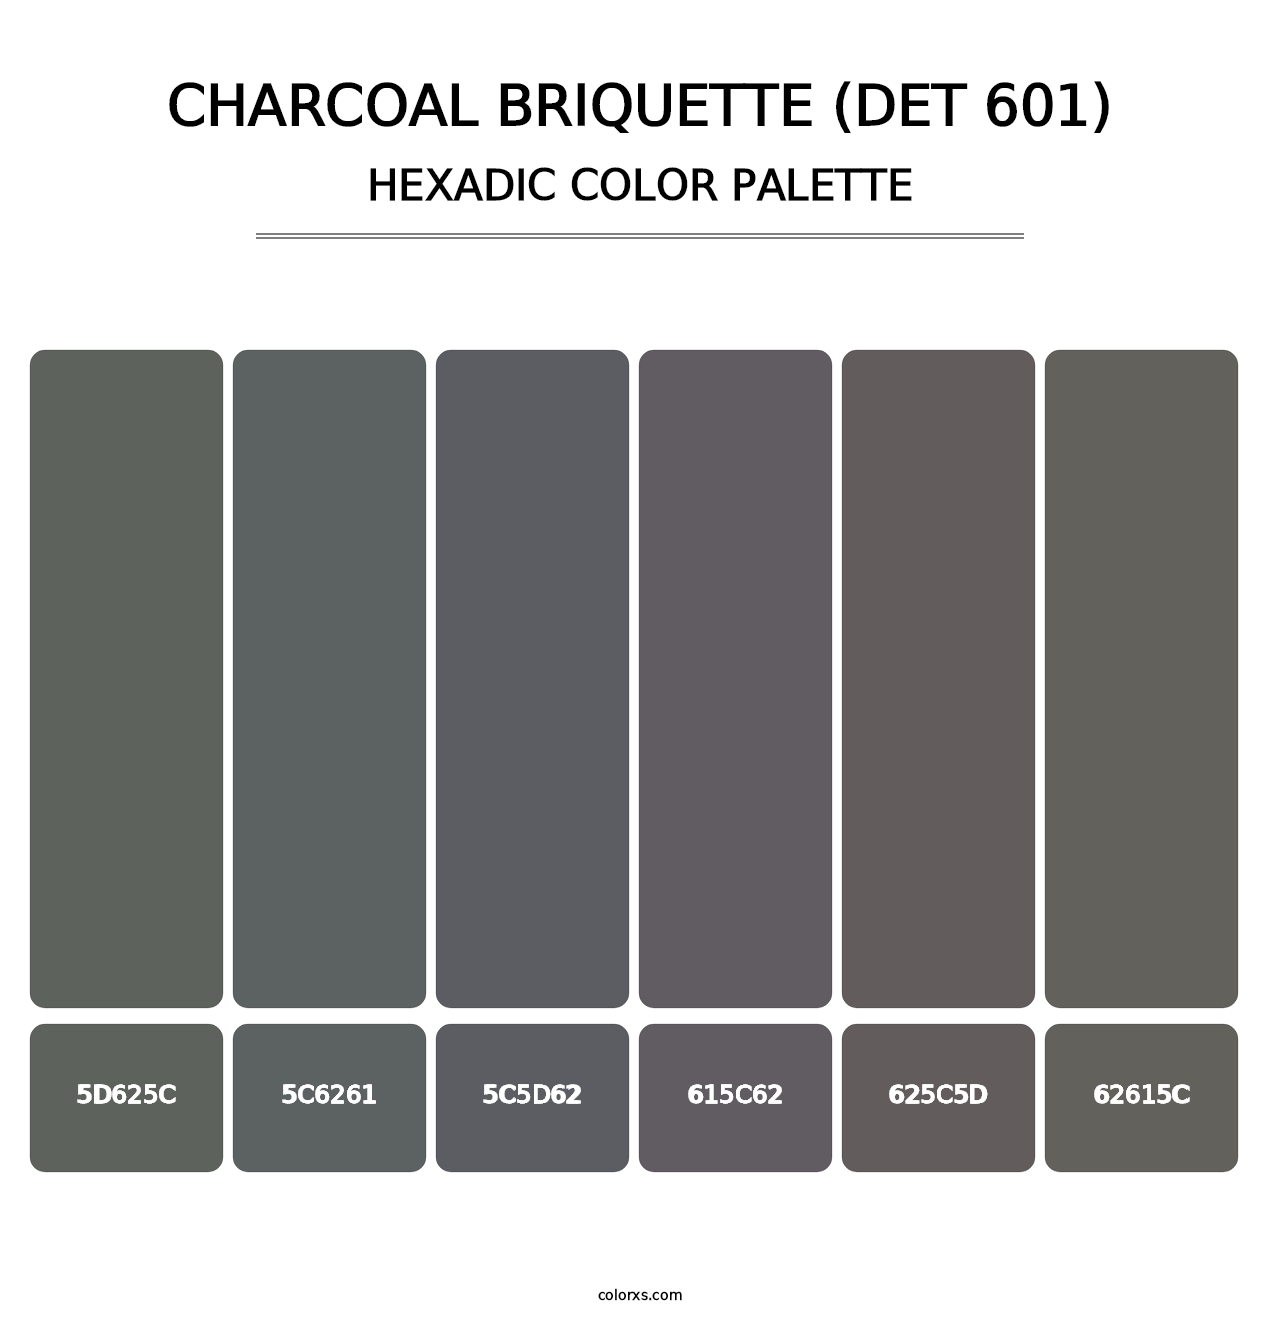 Charcoal Briquette (DET 601) - Hexadic Color Palette